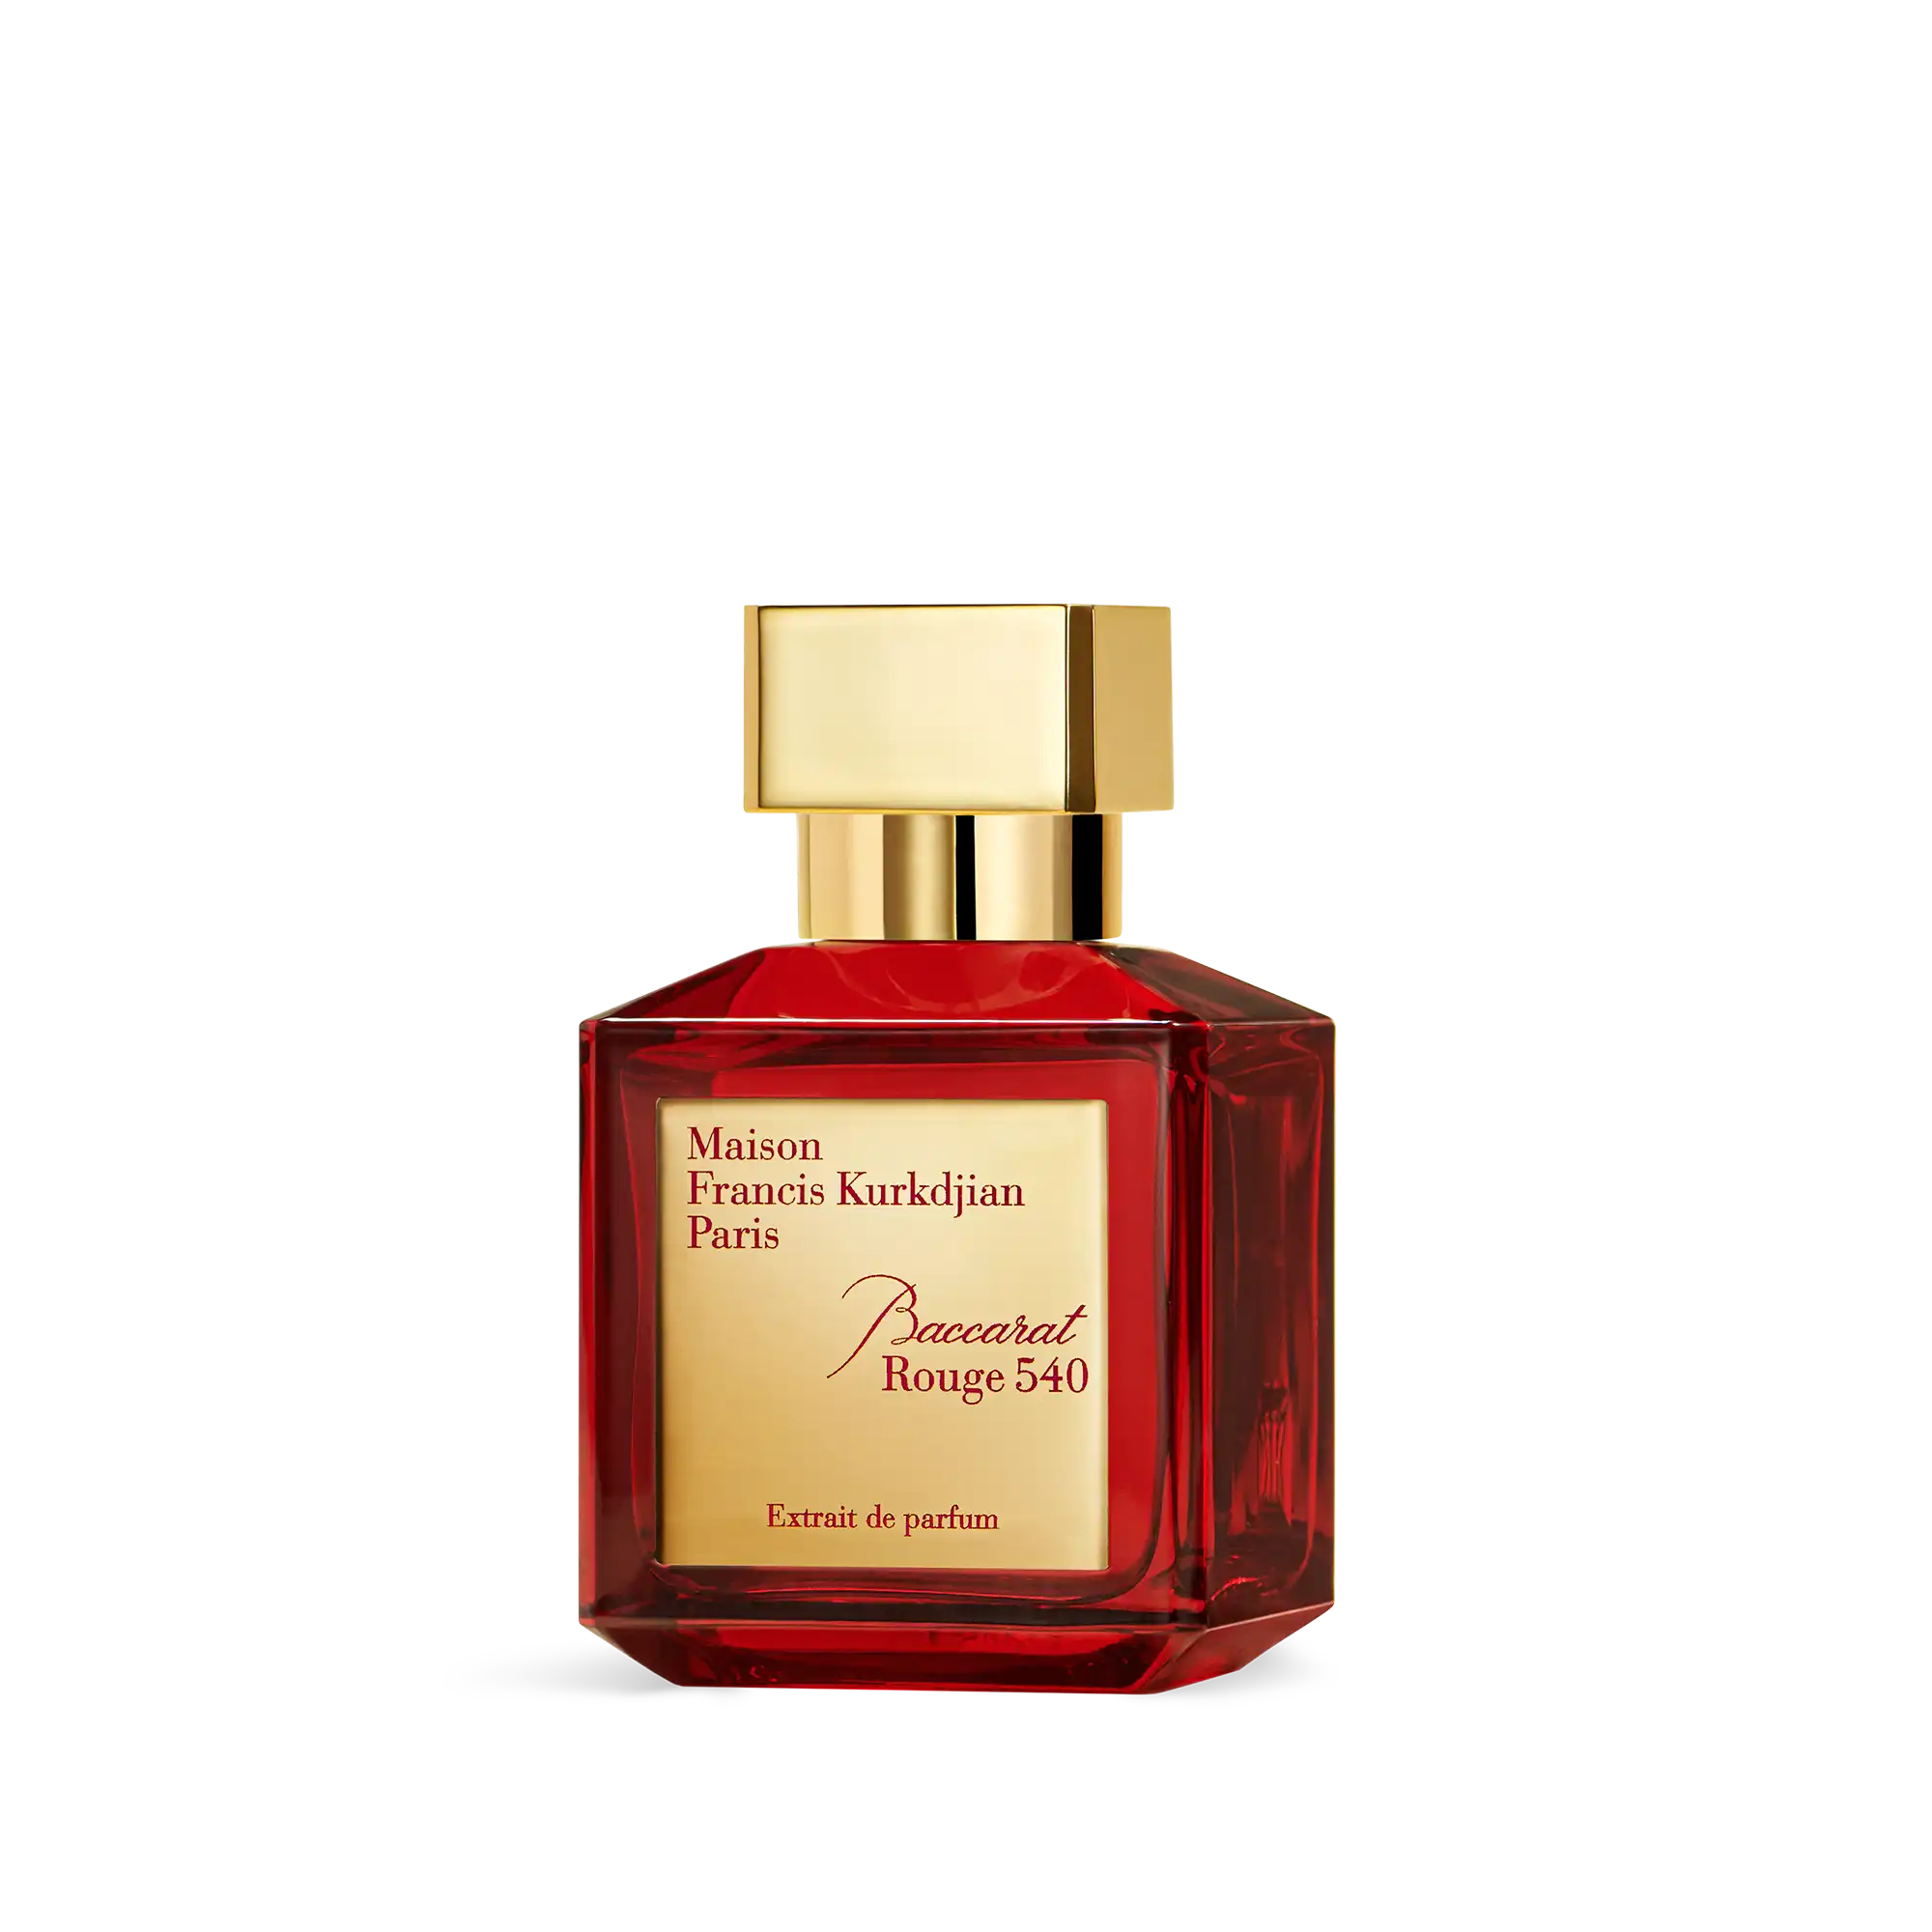 Maison Francis Kurkdjian baccarat rouge 540 extrait de parfum 70 ml